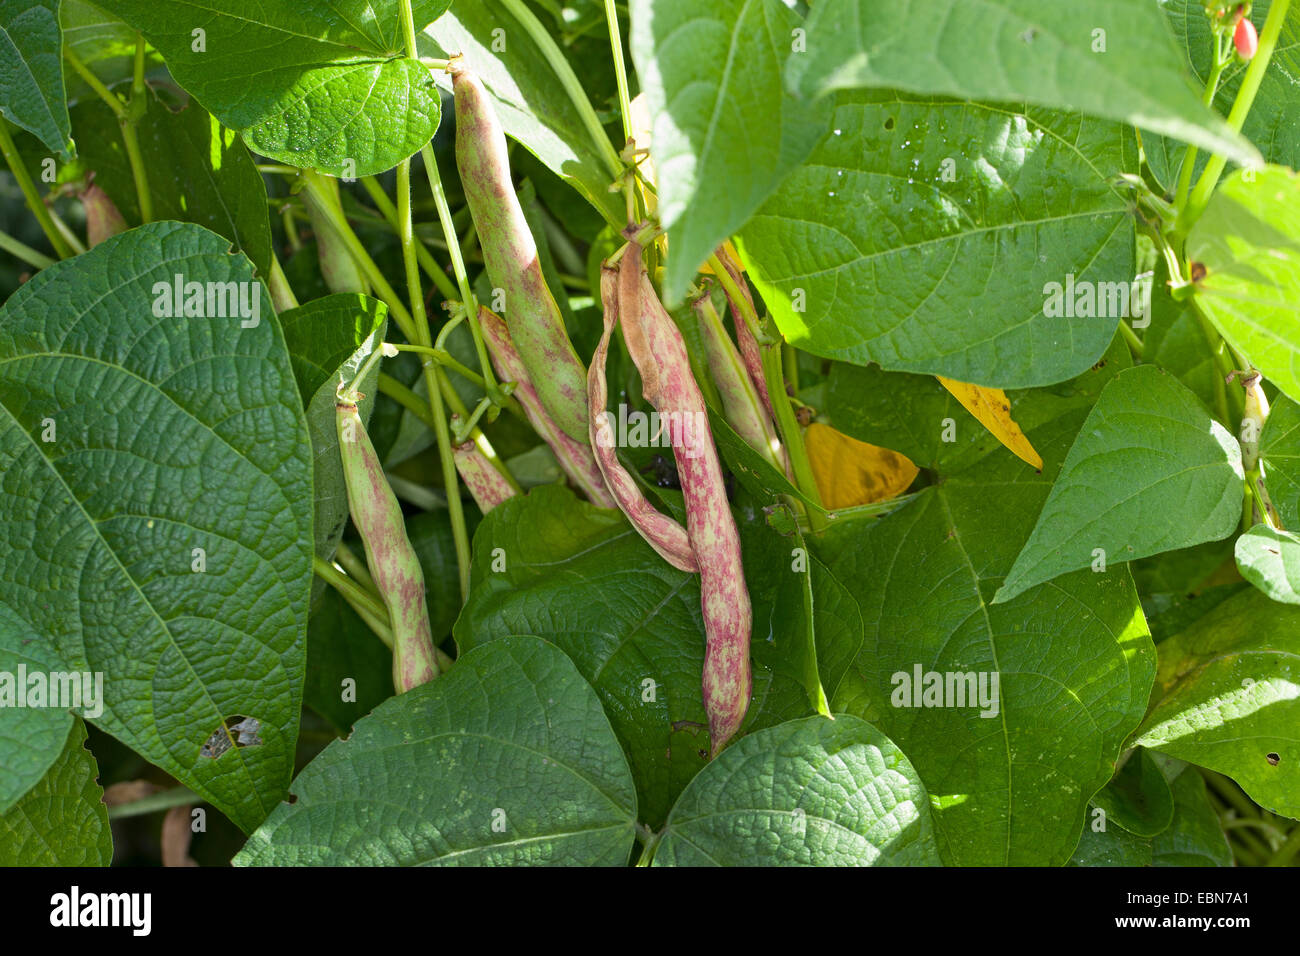 Le haricot commun (Phaseolus vulgaris), les haricots frais dans une usine Banque D'Images